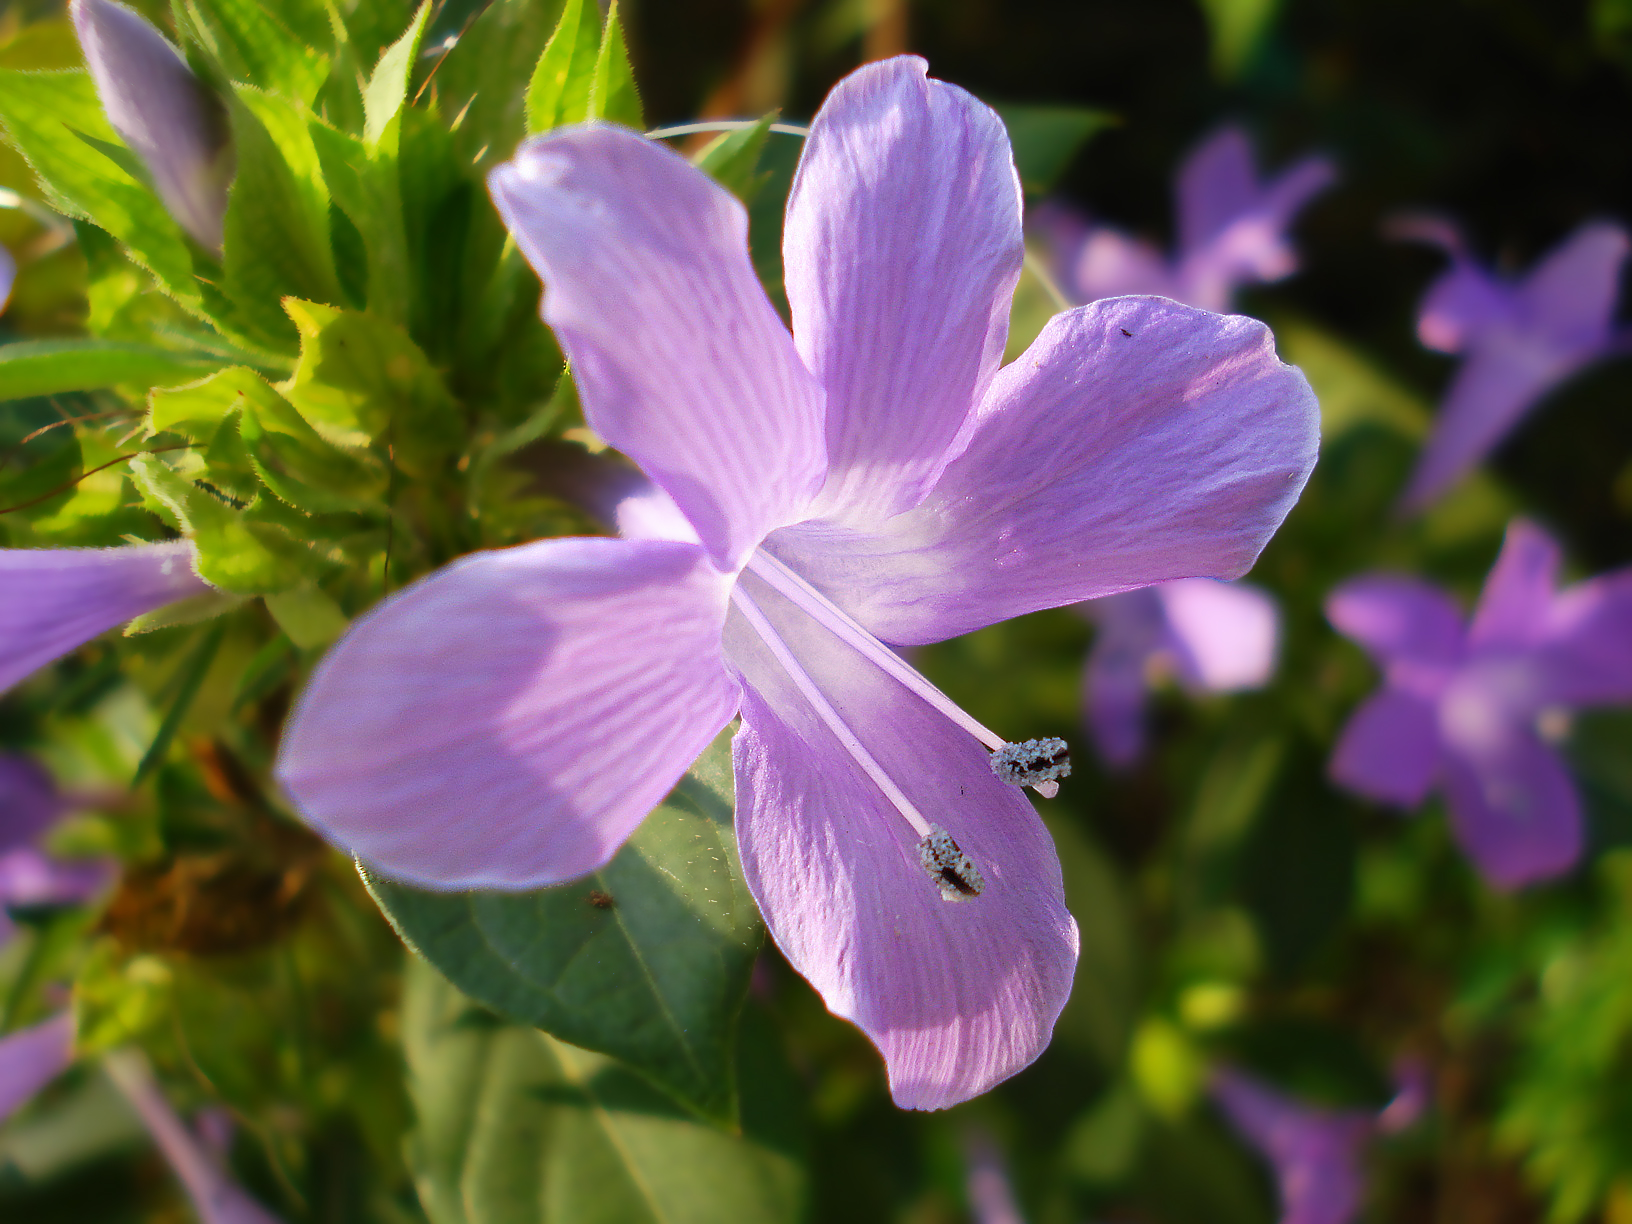 File:Violet flower photo.jpg